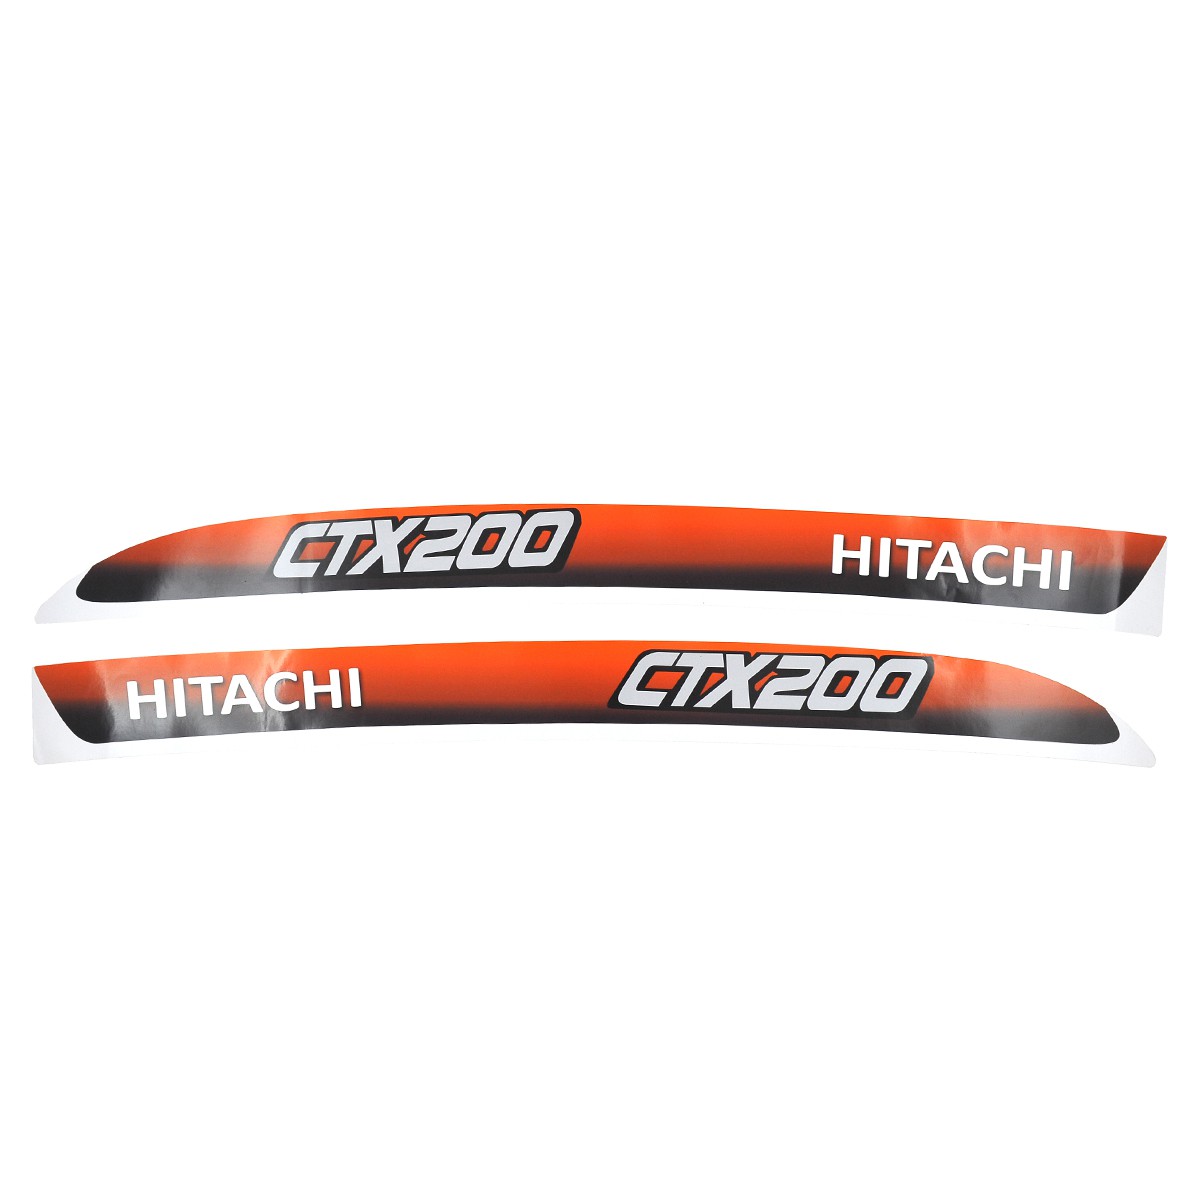 Aufkleber für Hitachi CTX200